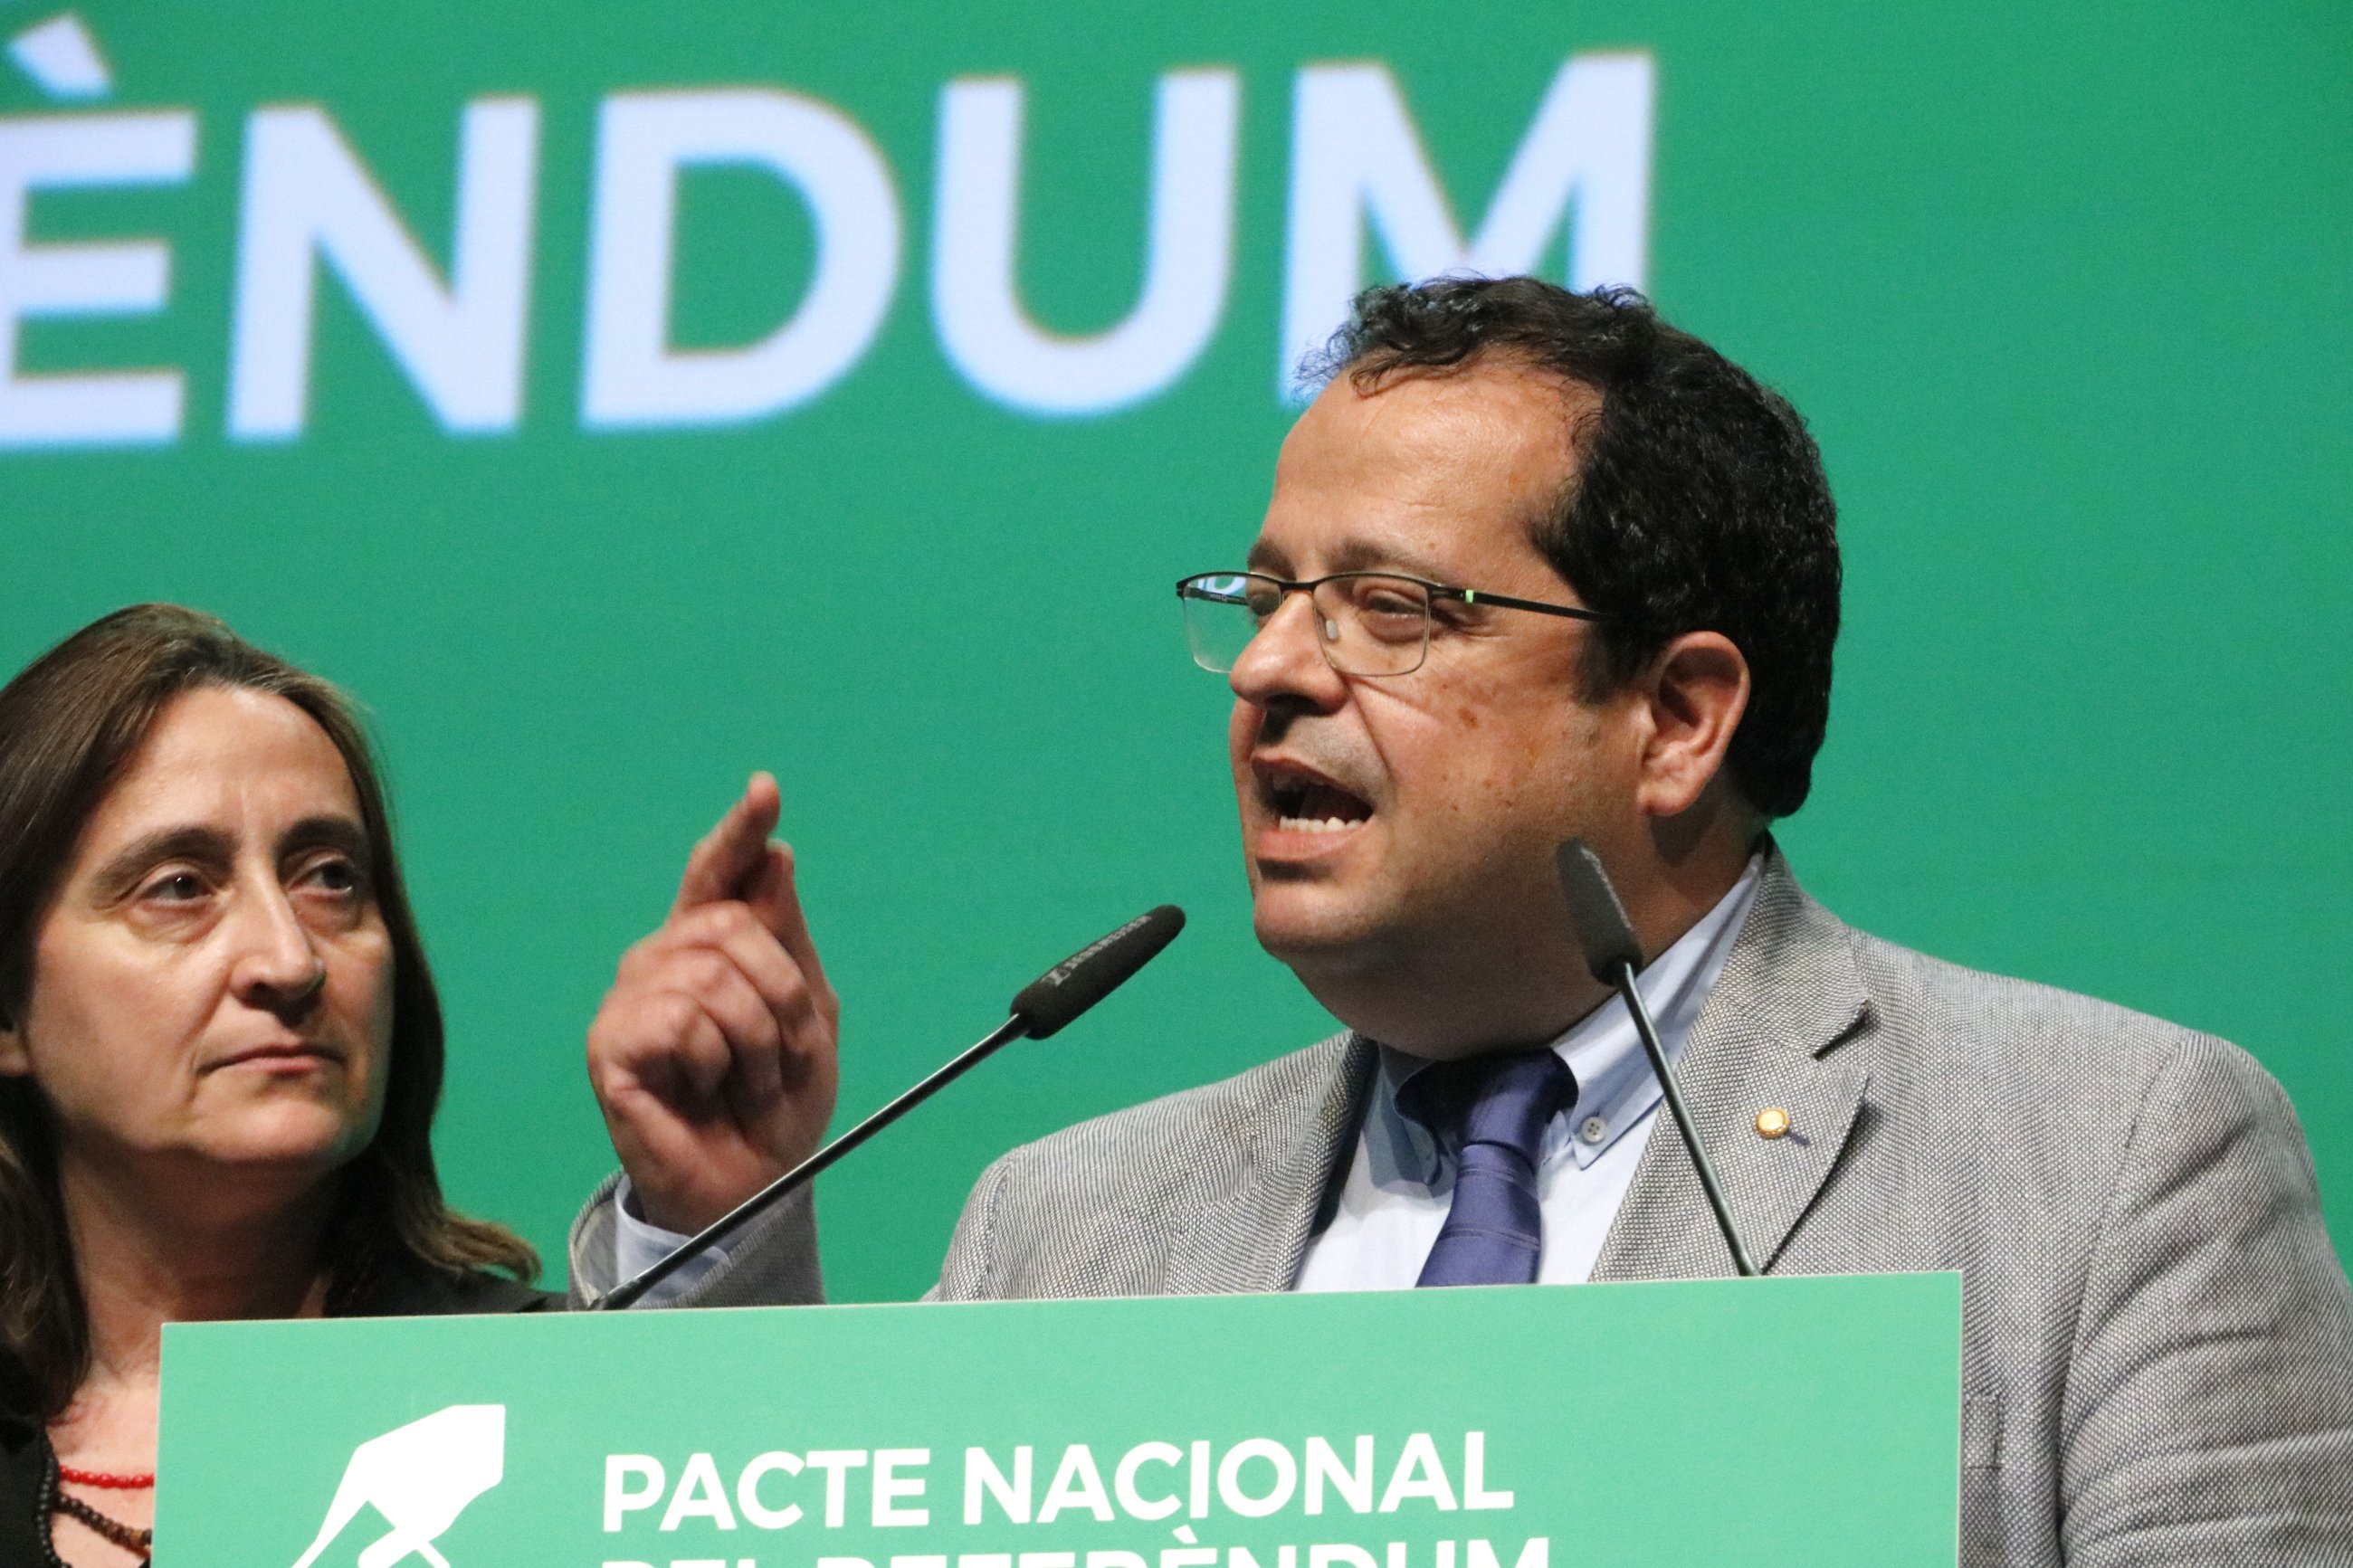 El Pacte Nacional defensa que pertoca a partits i institucions "concretar" el referèndum